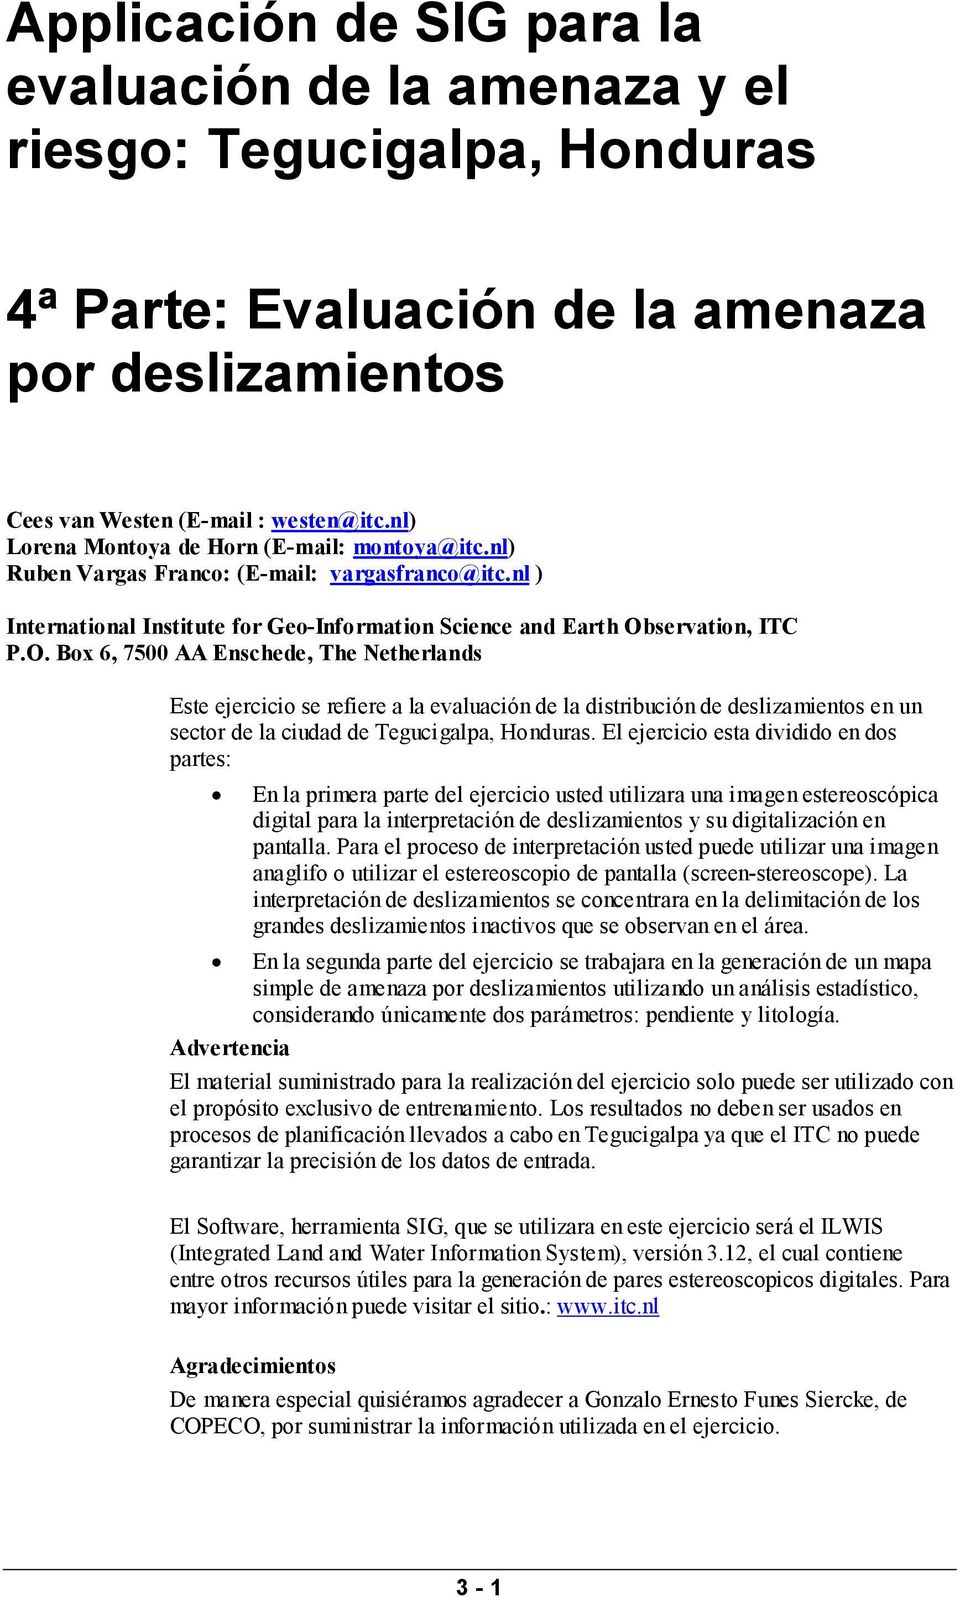 servation, ITC P.O. Box 6, 7500 AA Enschede, The Netherlands Este ejercicio se refiere a la evaluación de la distribución de deslizamientos en un sector de la ciudad de Tegucigalpa, Honduras.